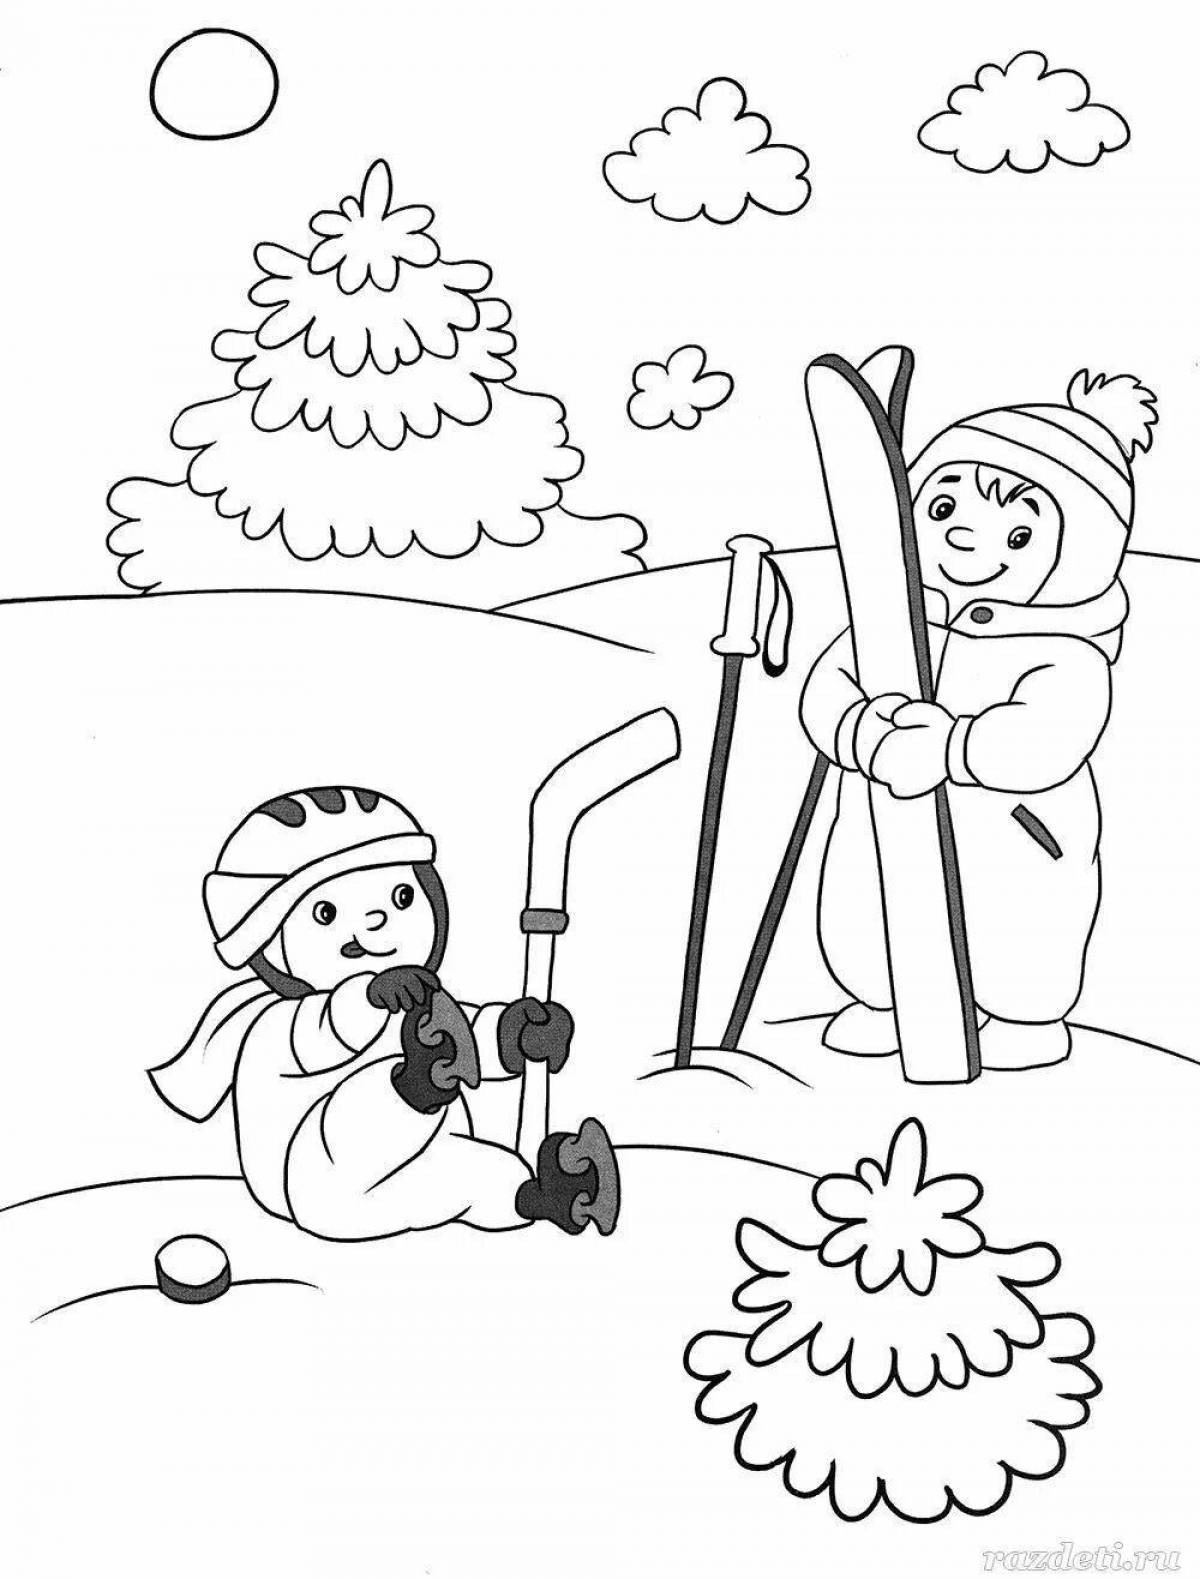 Сказочная раскраска зима для детей 4 5